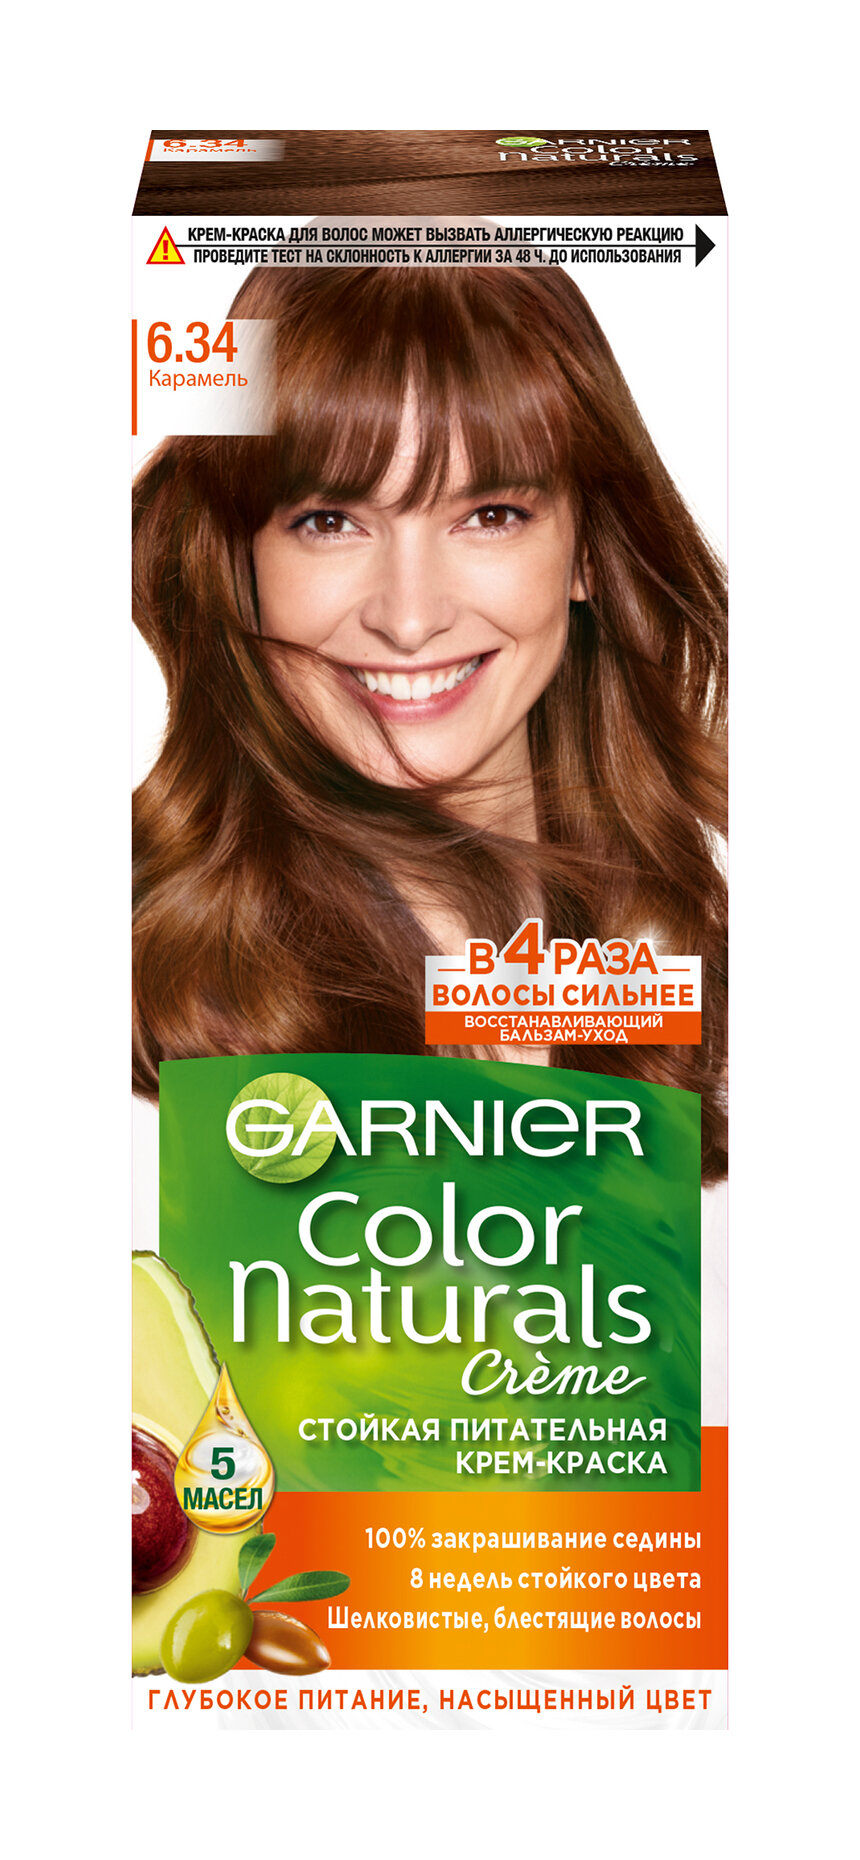 GARNIER Краска для волос Color Naturals, 6.34 Карамель